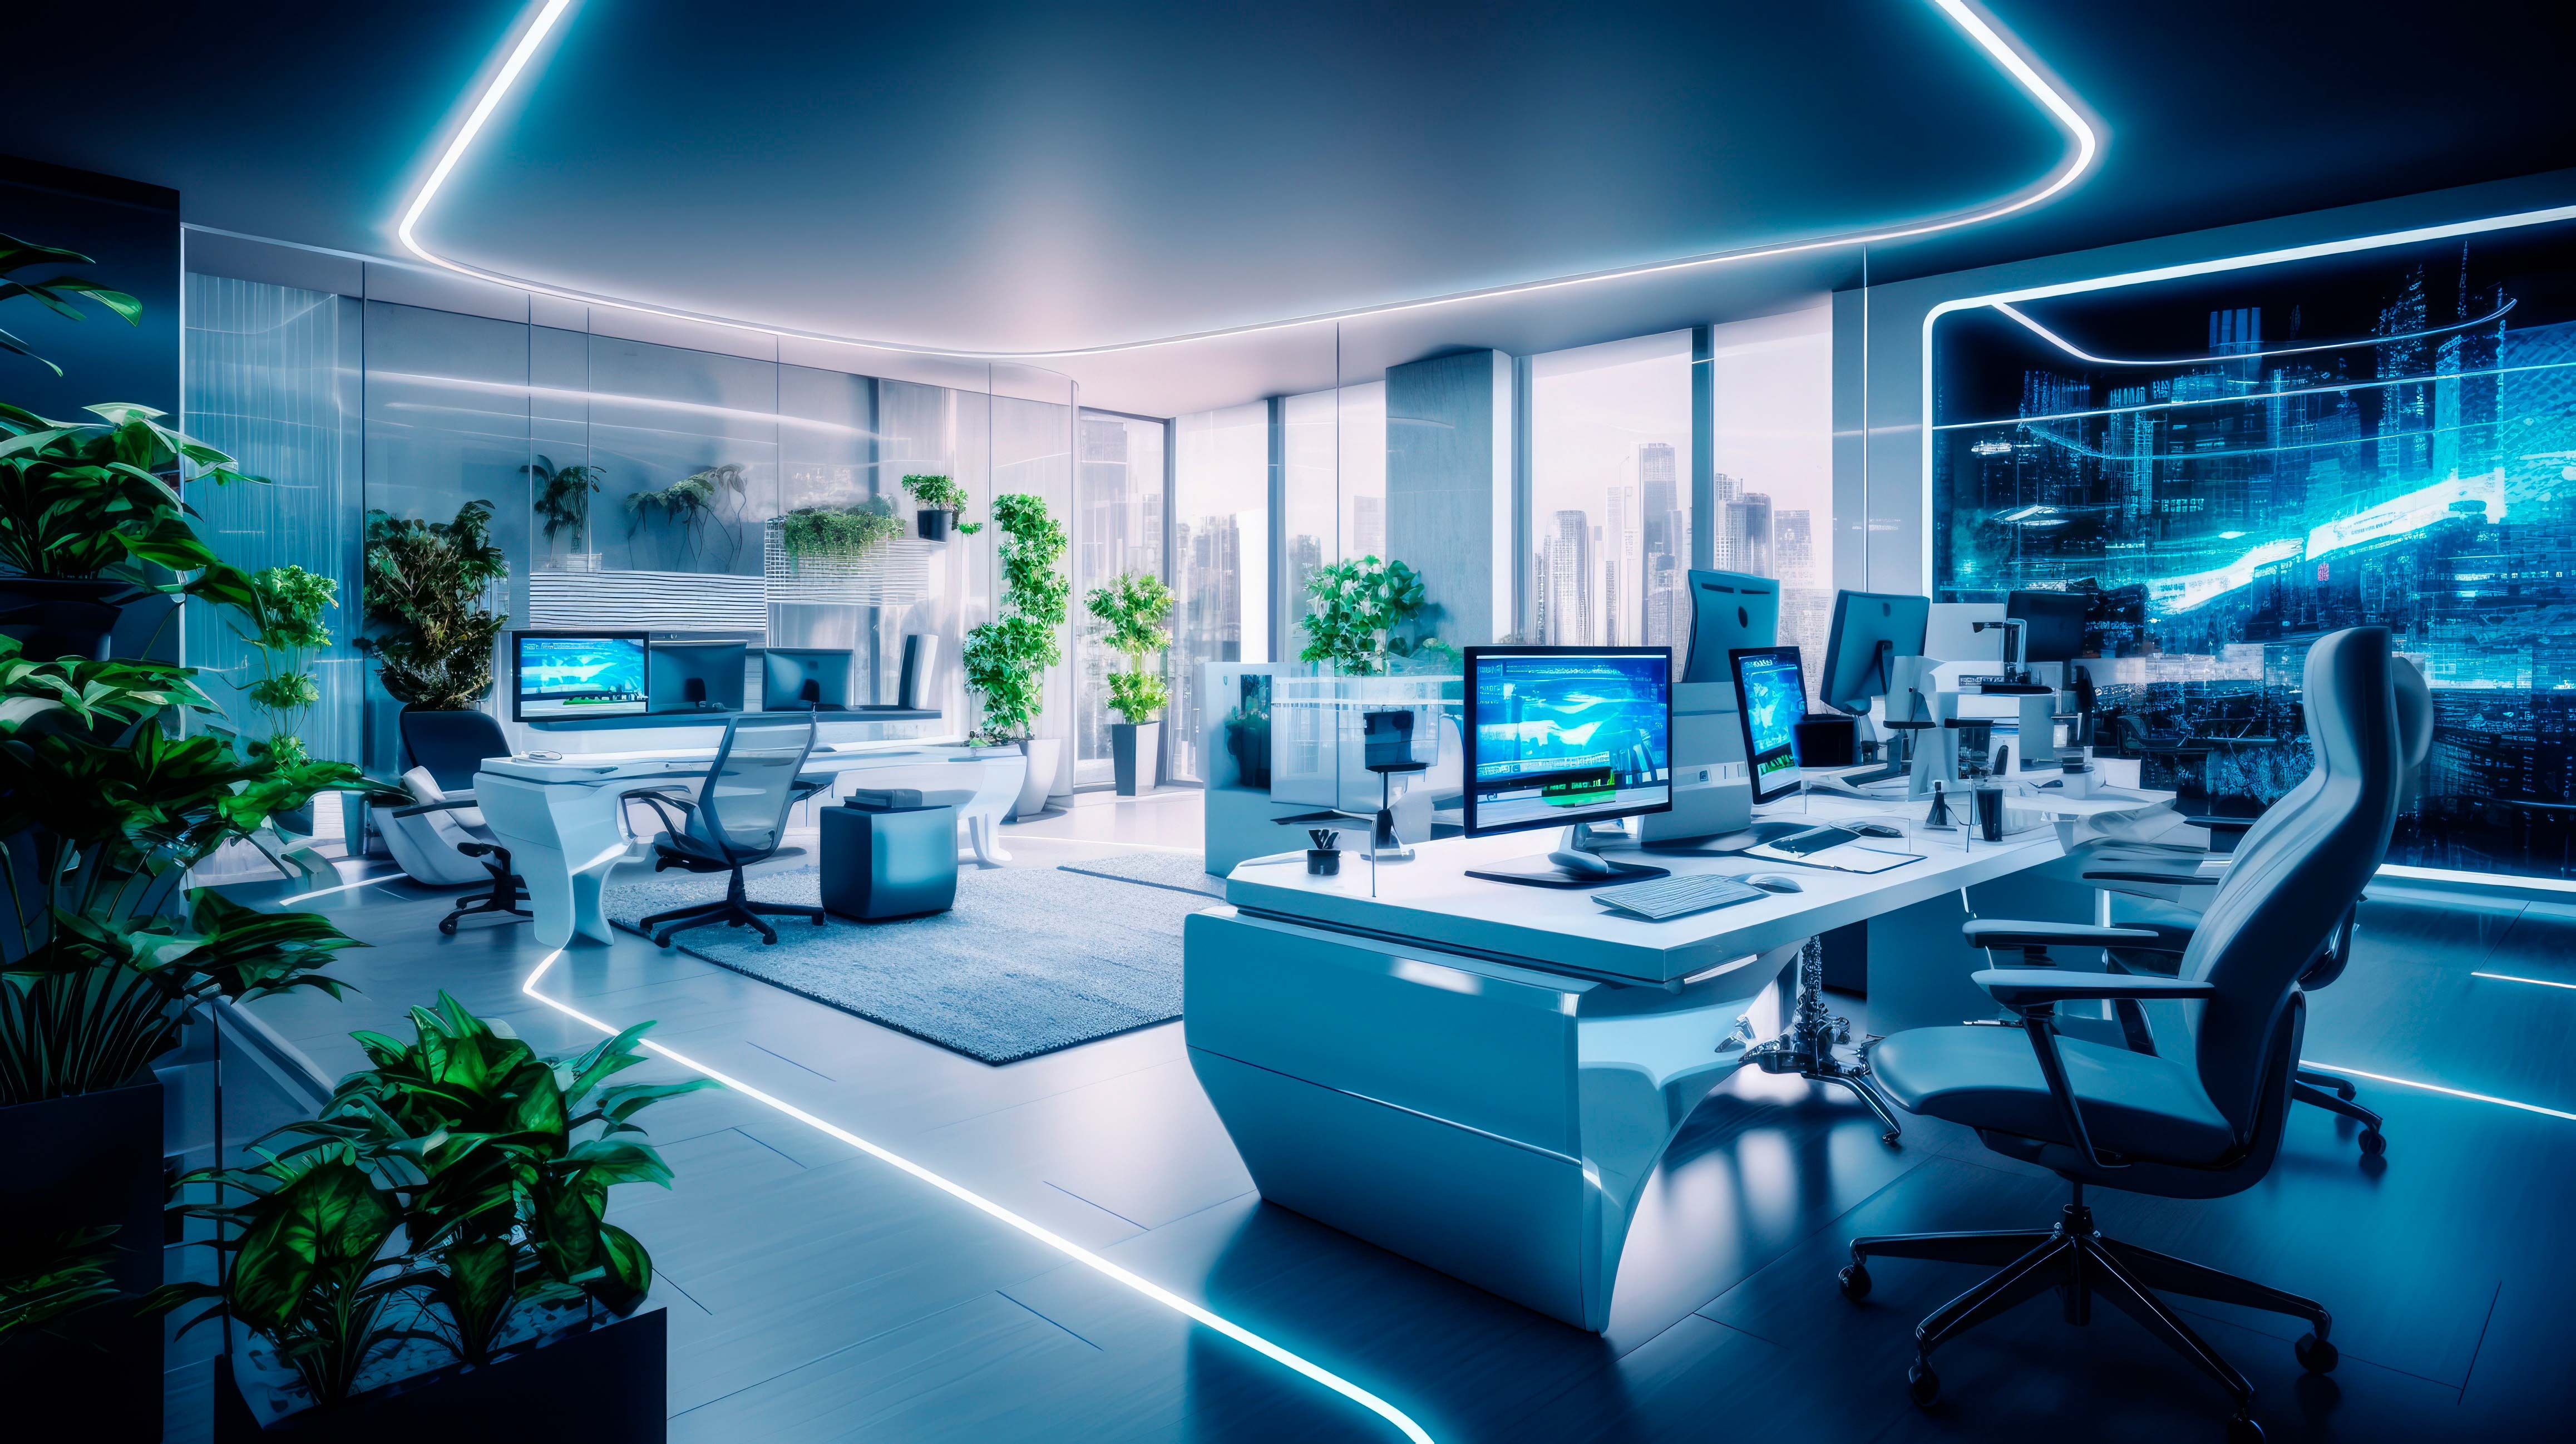 Ein Büro im futuristischen Stil mit vielen Blautönen